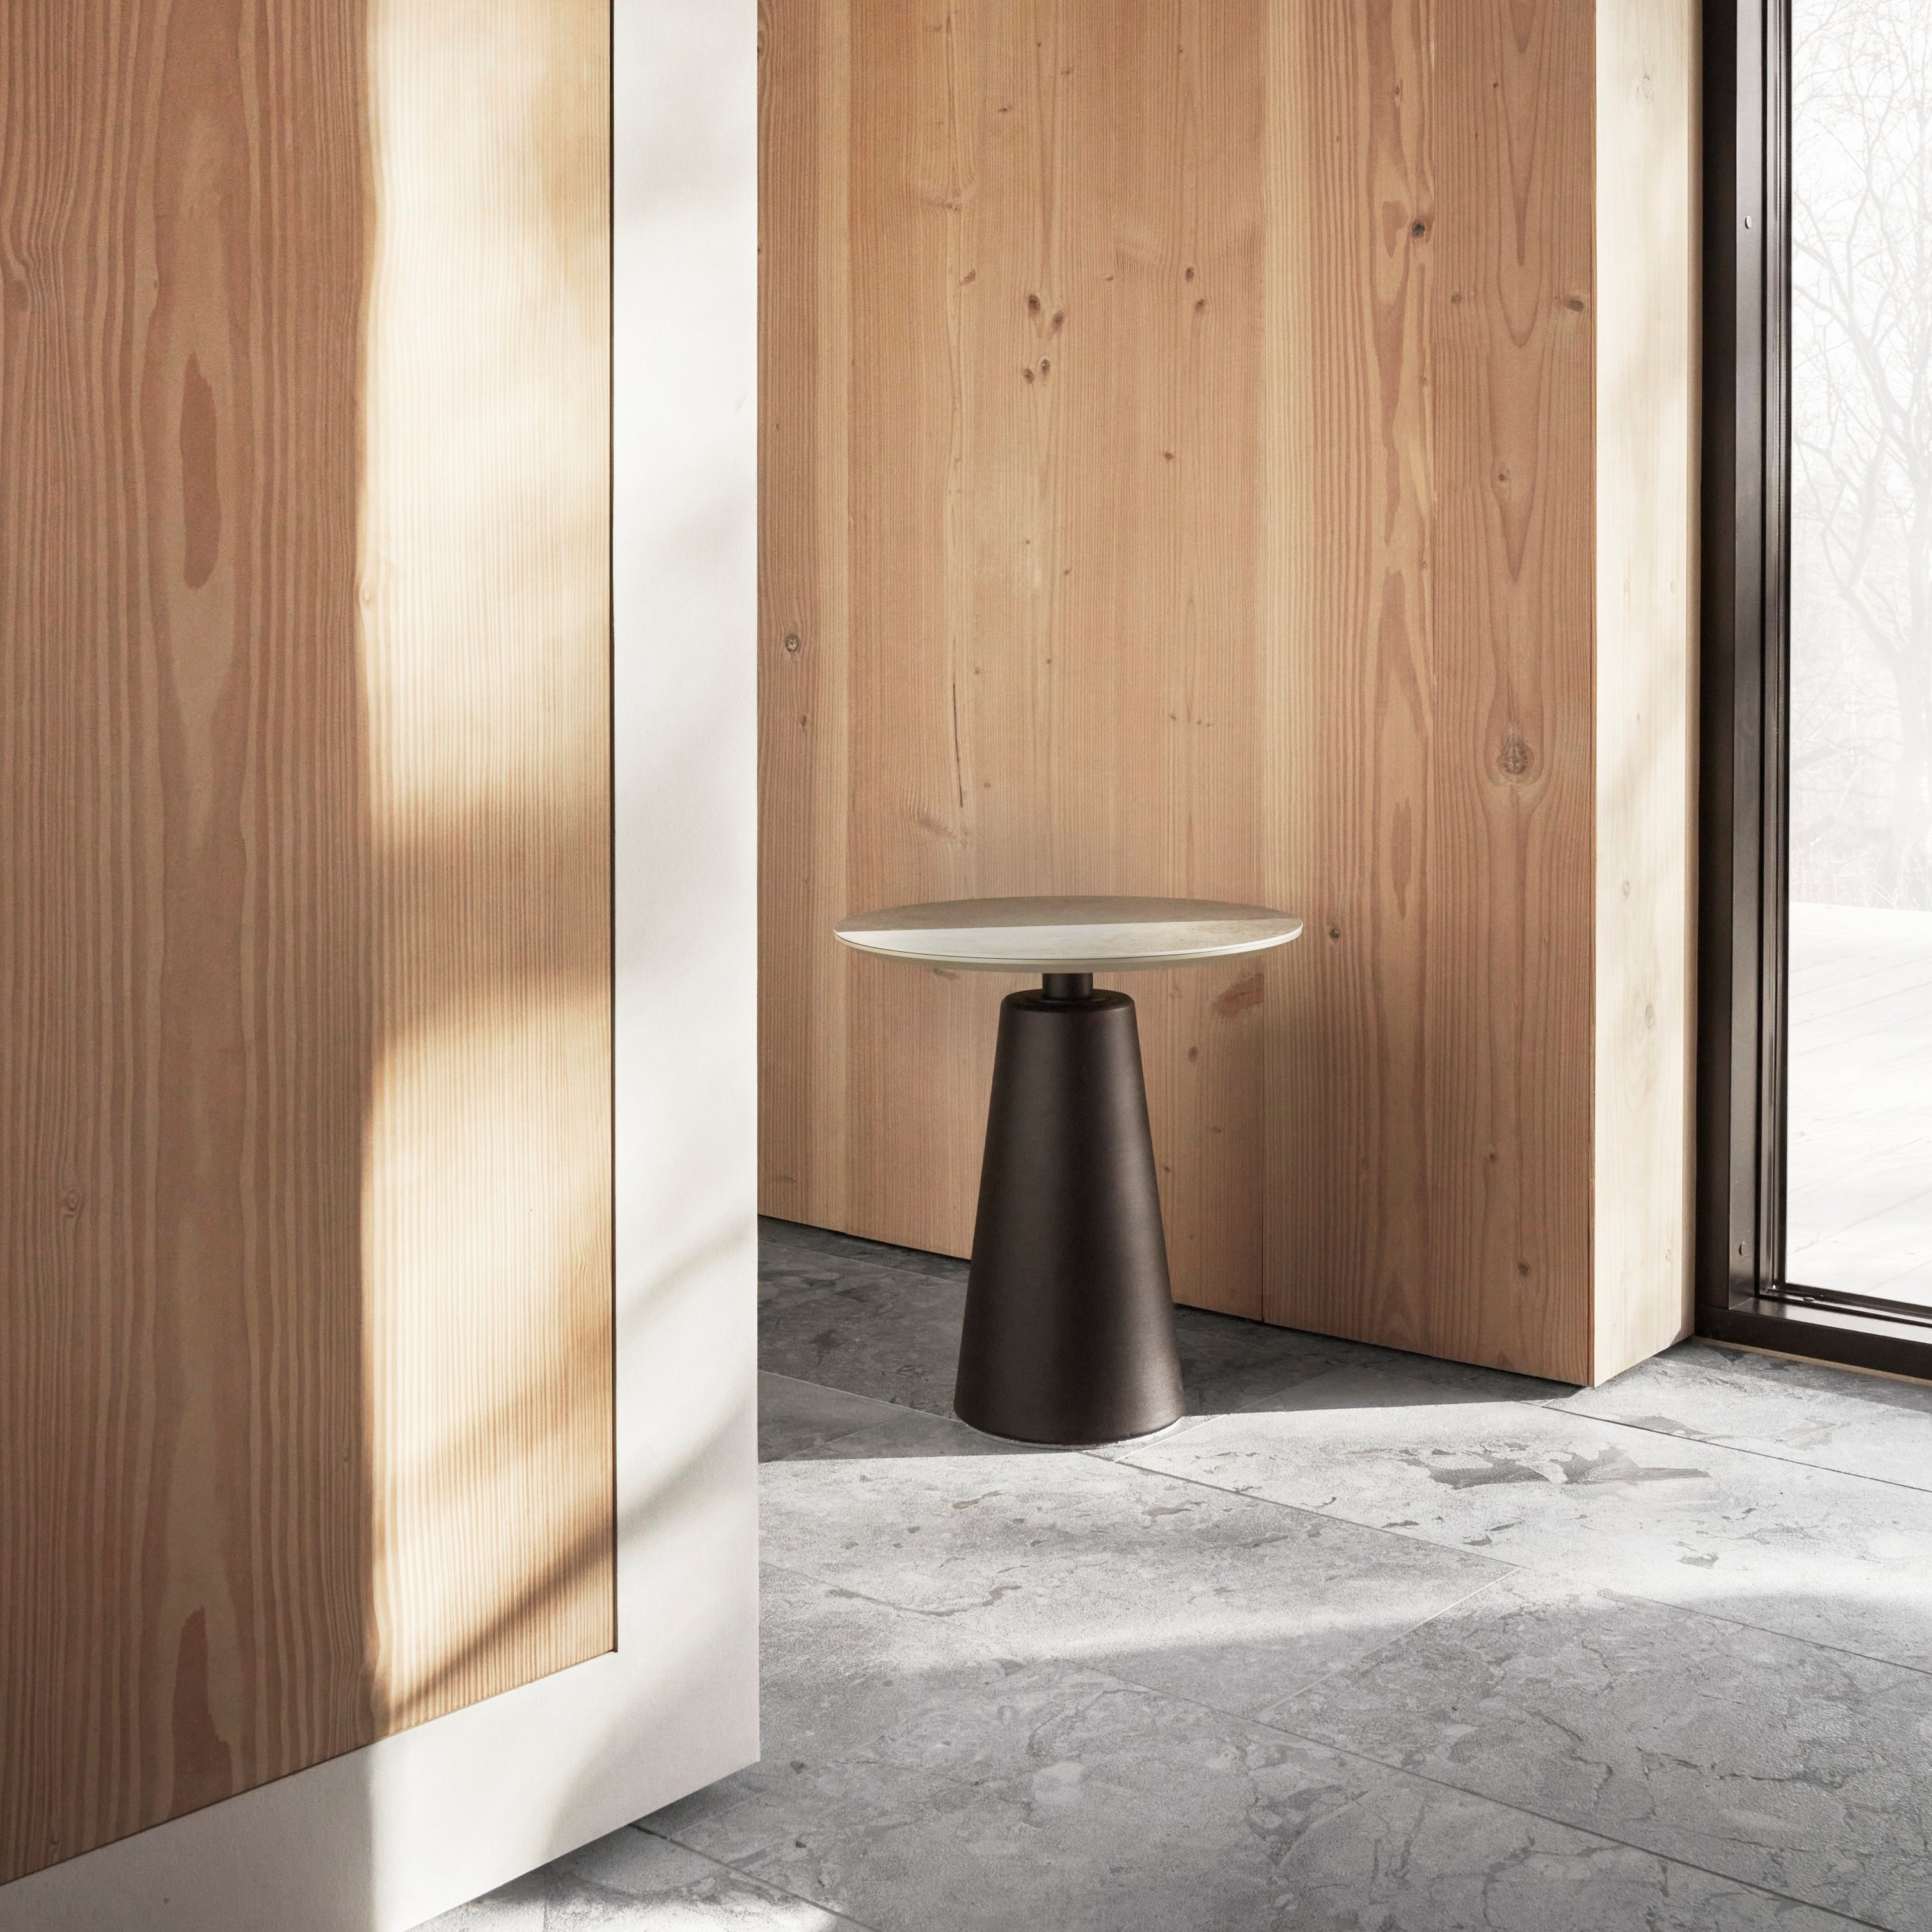 Espaço minimalista com paredes de madeira, uma mesa lateral simples e luz natural através de janelas grandes.